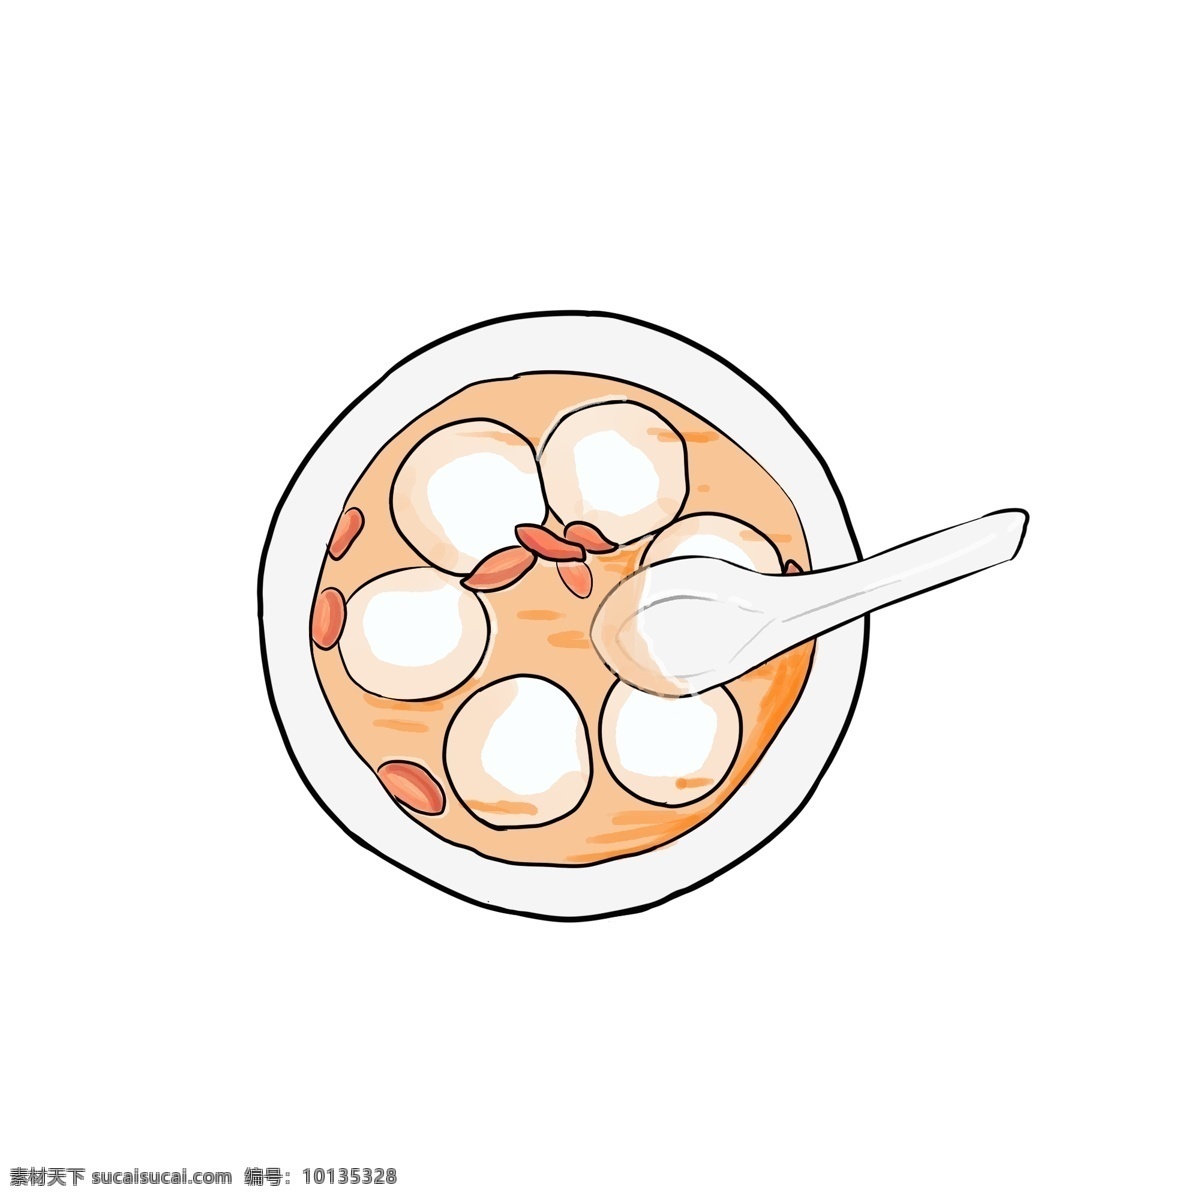 手绘 卡通 创意 美味 食物 汤圆 插画 美味汤圆 美食 美味的食物 芝麻汤圆 枸杞汤圆 碗 汤勺 吃汤圆